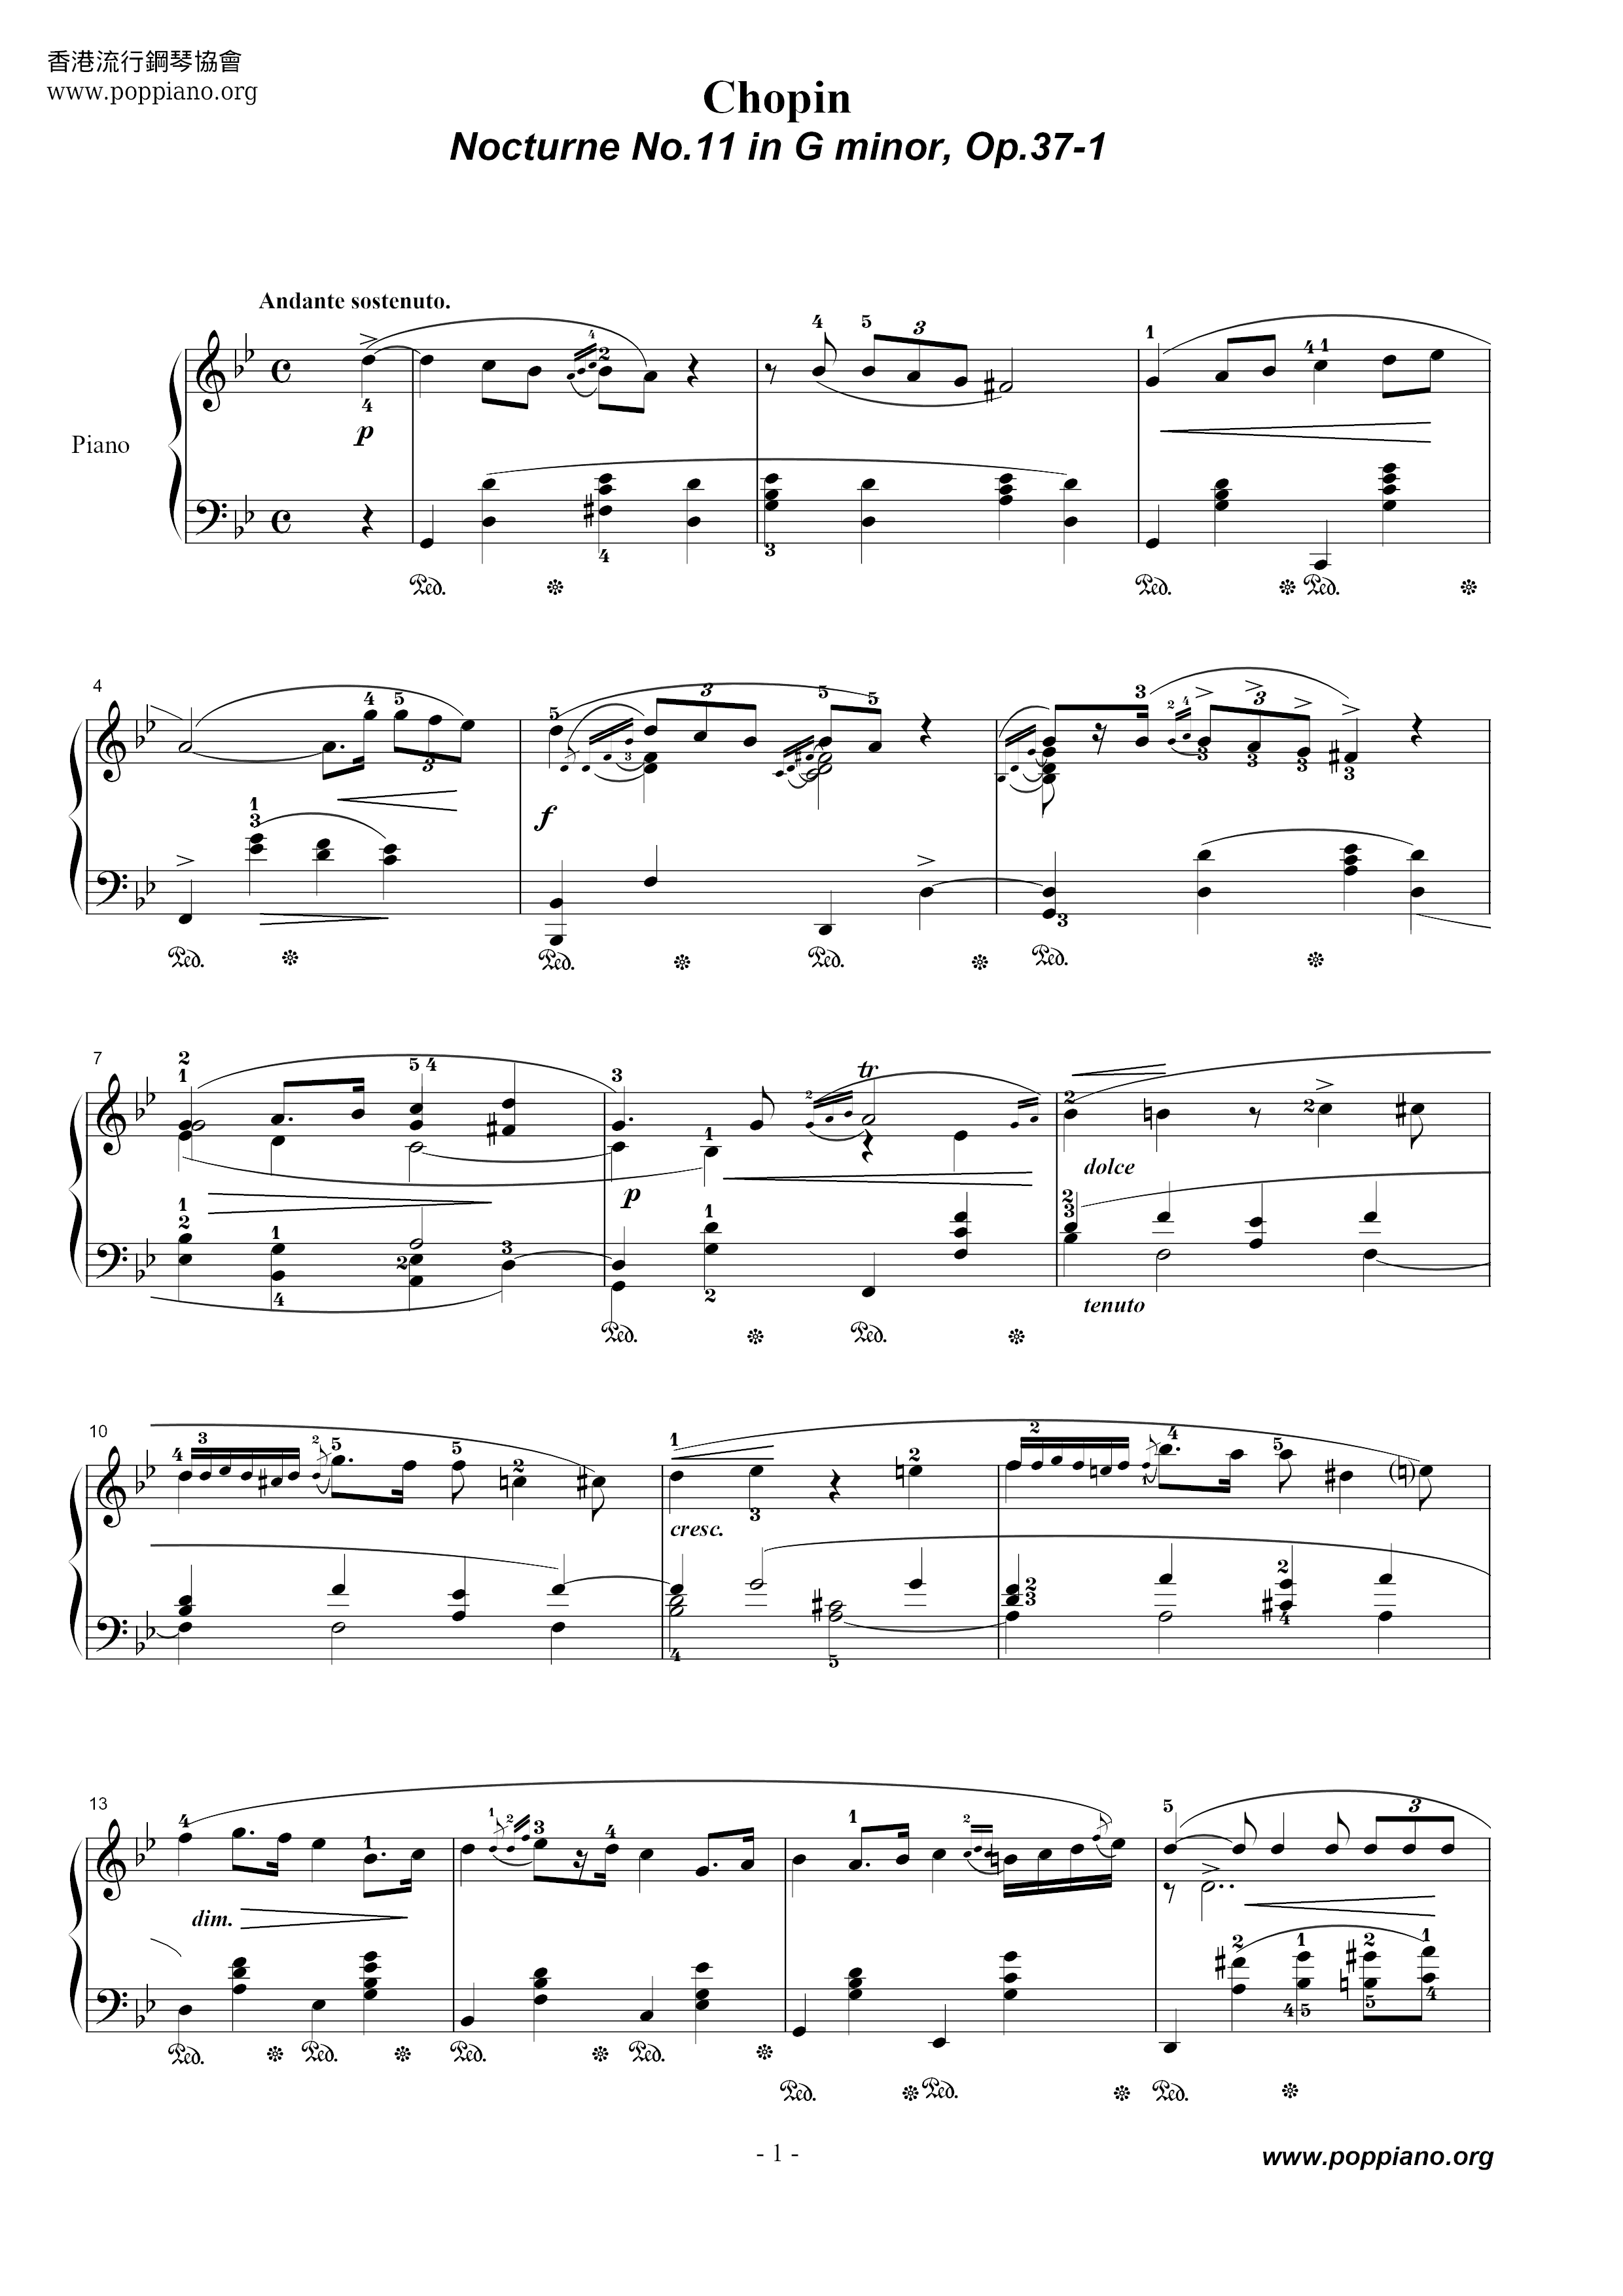 Nocturne No. 11 Score